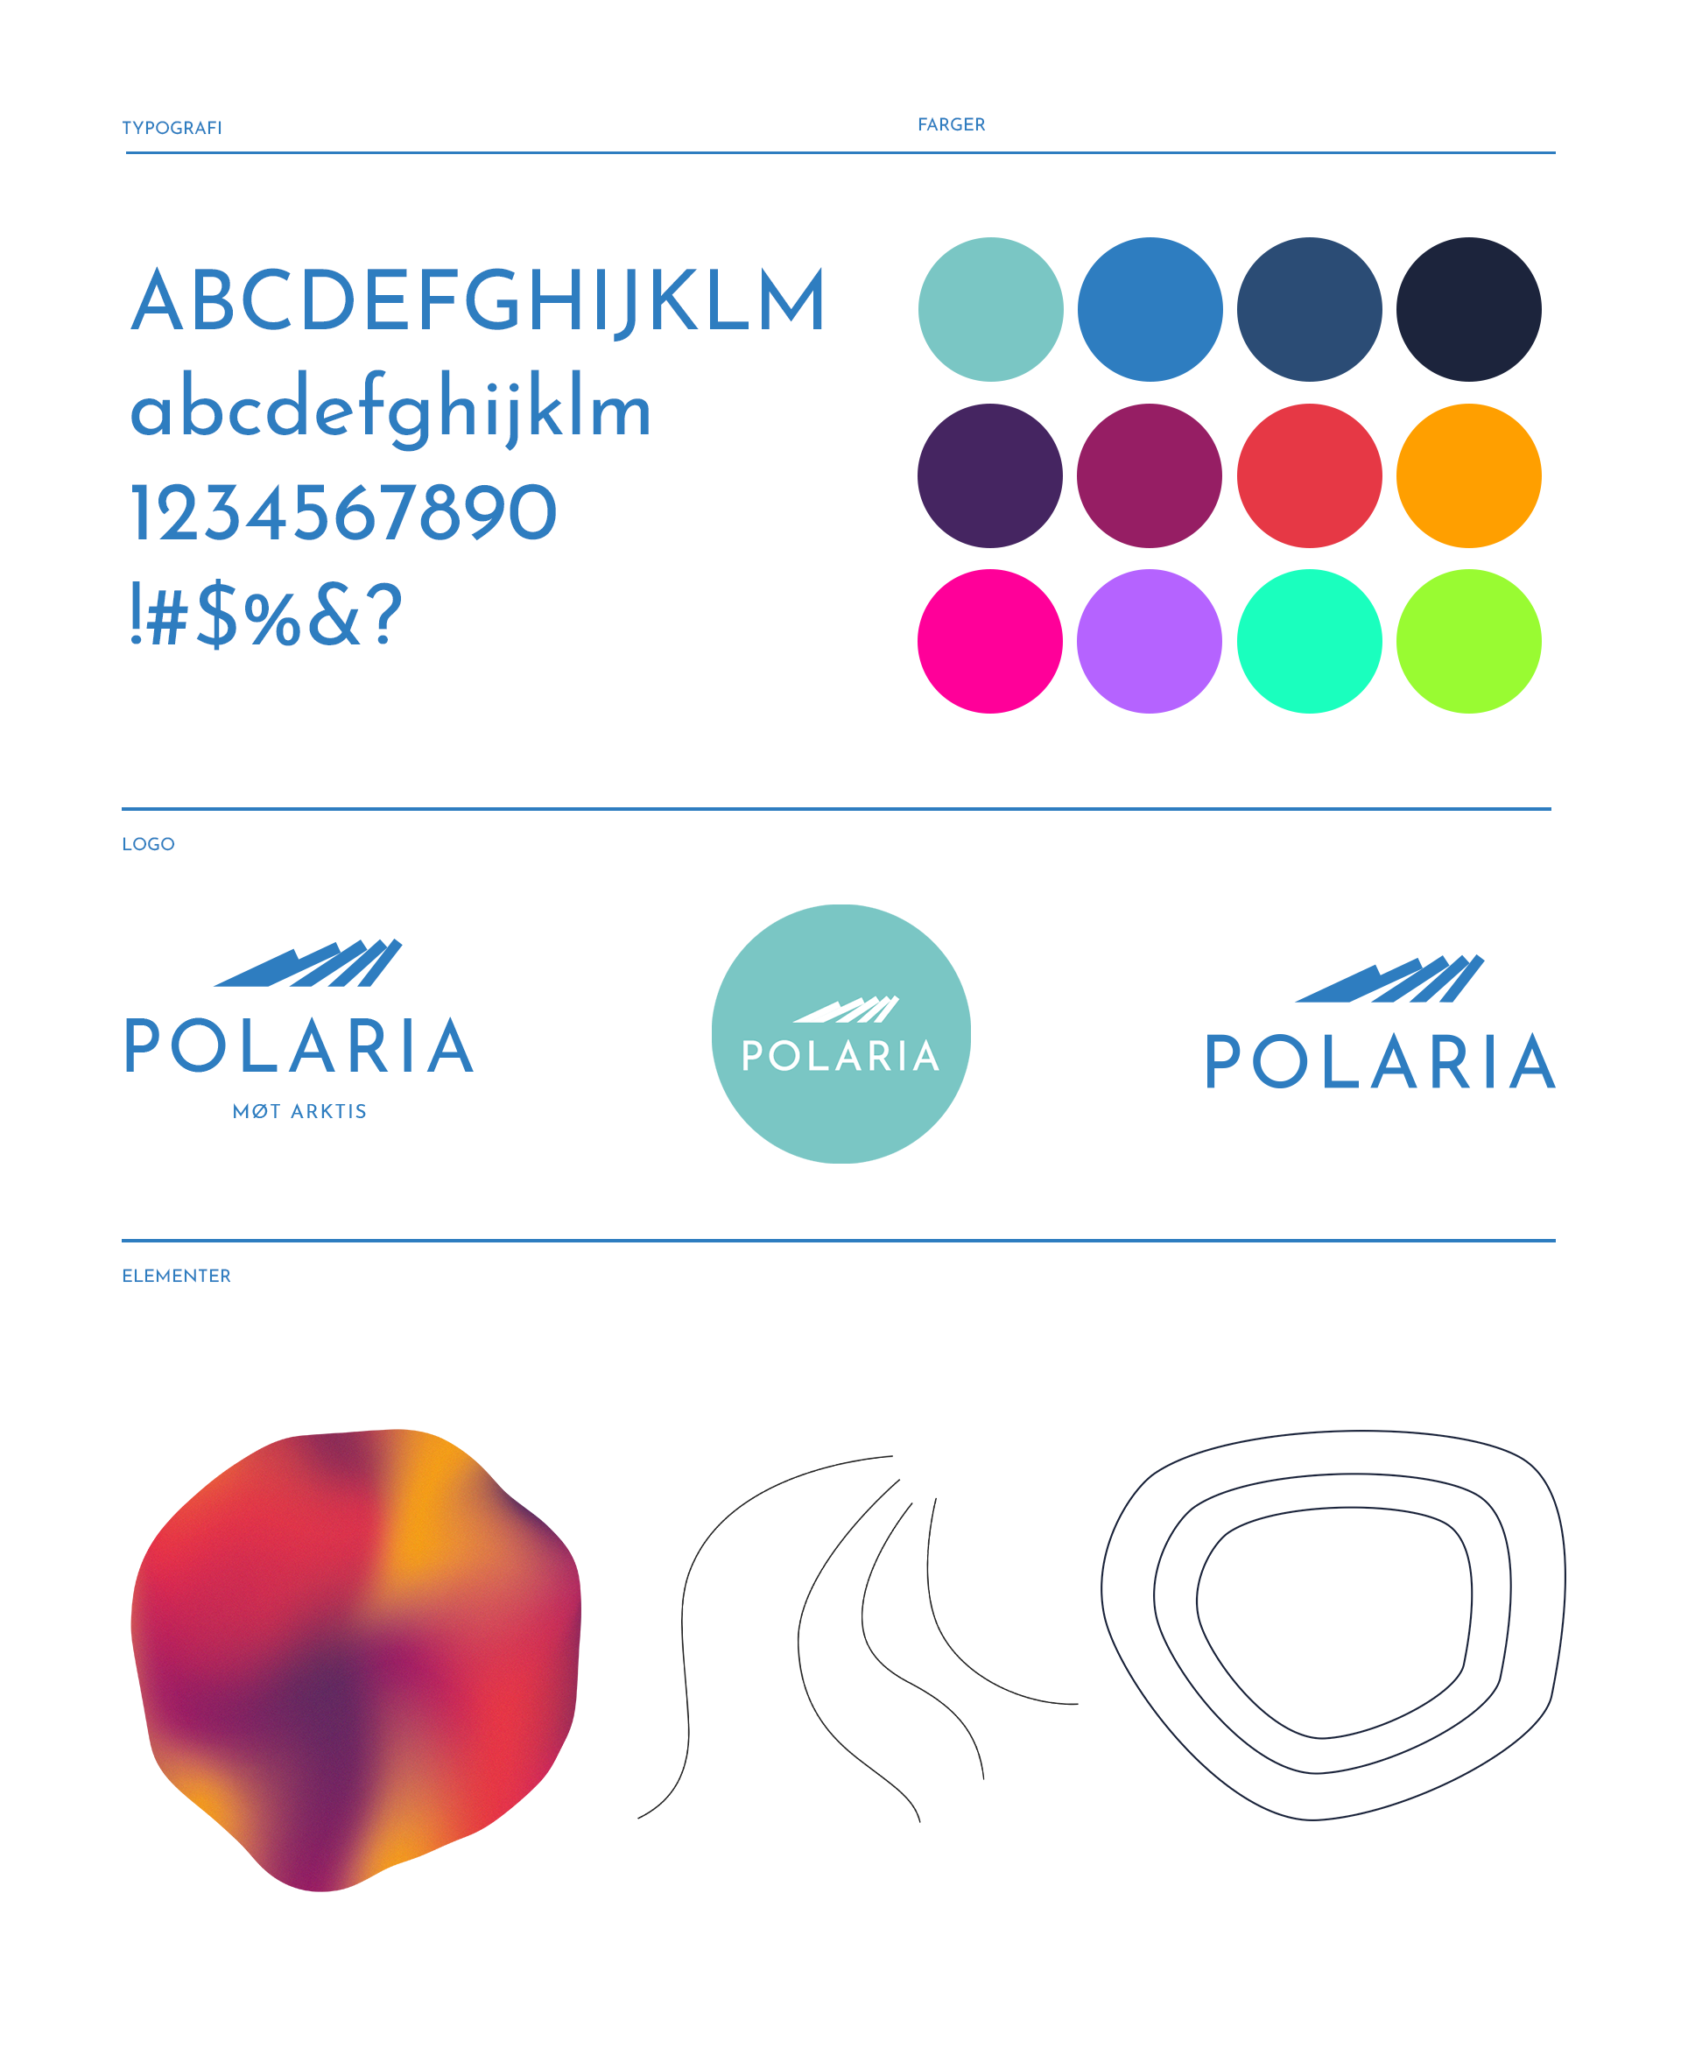 Polaria Visuell identitet med logo, farger og typografi